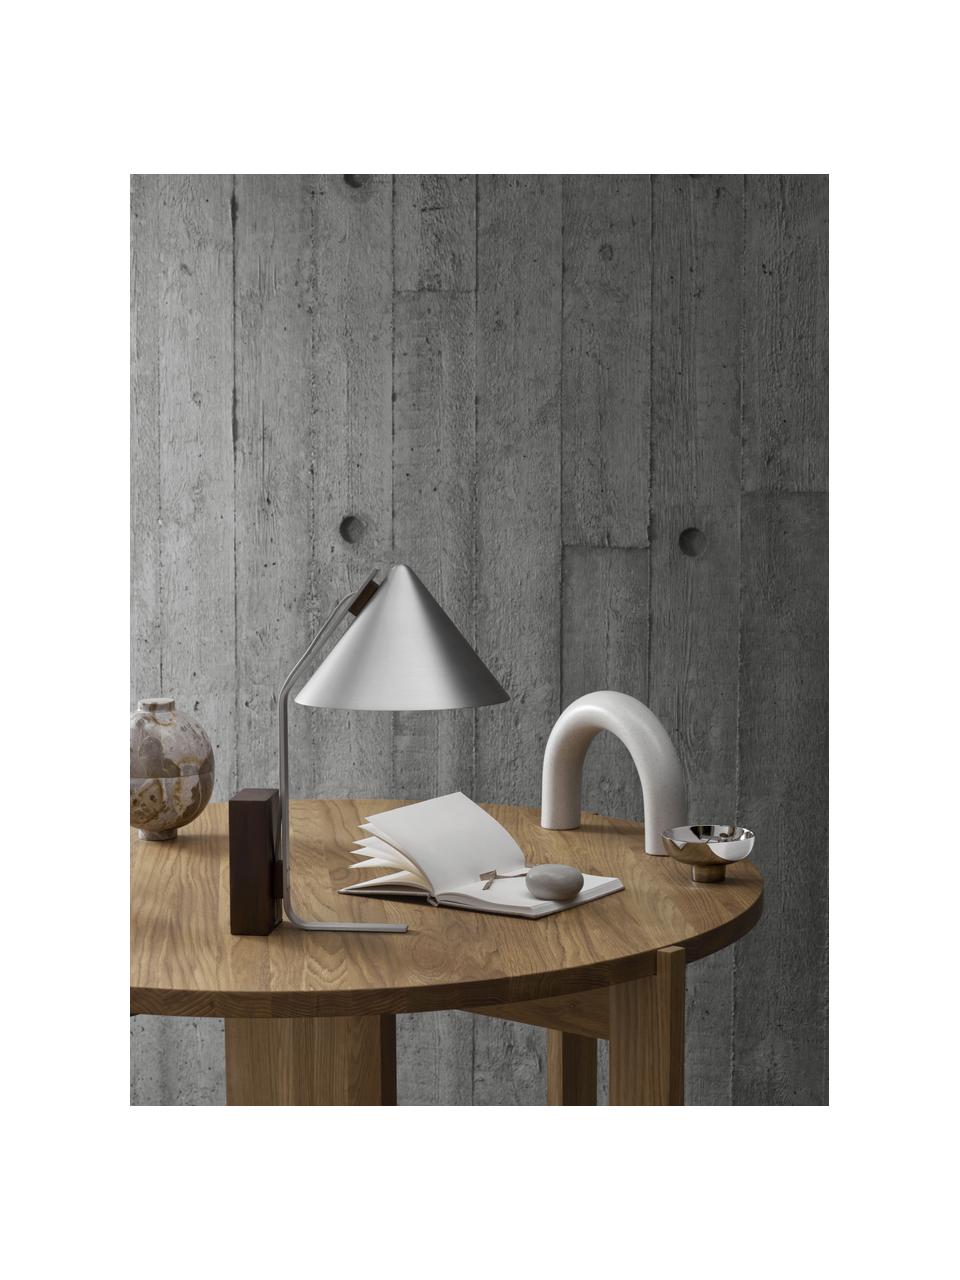 Lampa stołowa Cone, Odcienie srebrnego, Ø 25 x W 44 cm